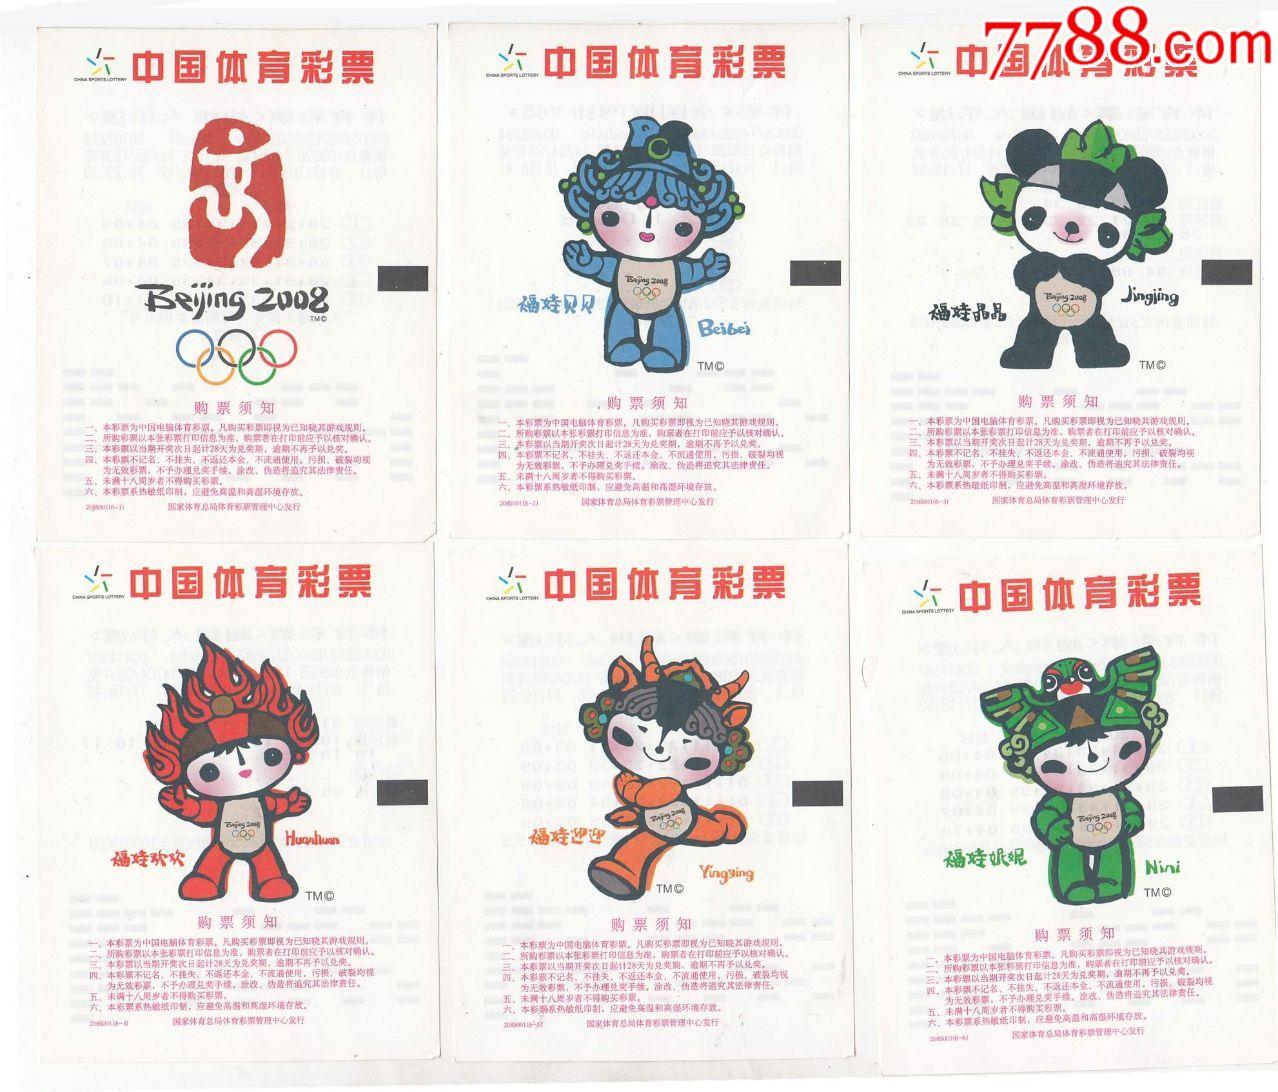 中国体育彩票208s001第29届北京奥运会吉祥物